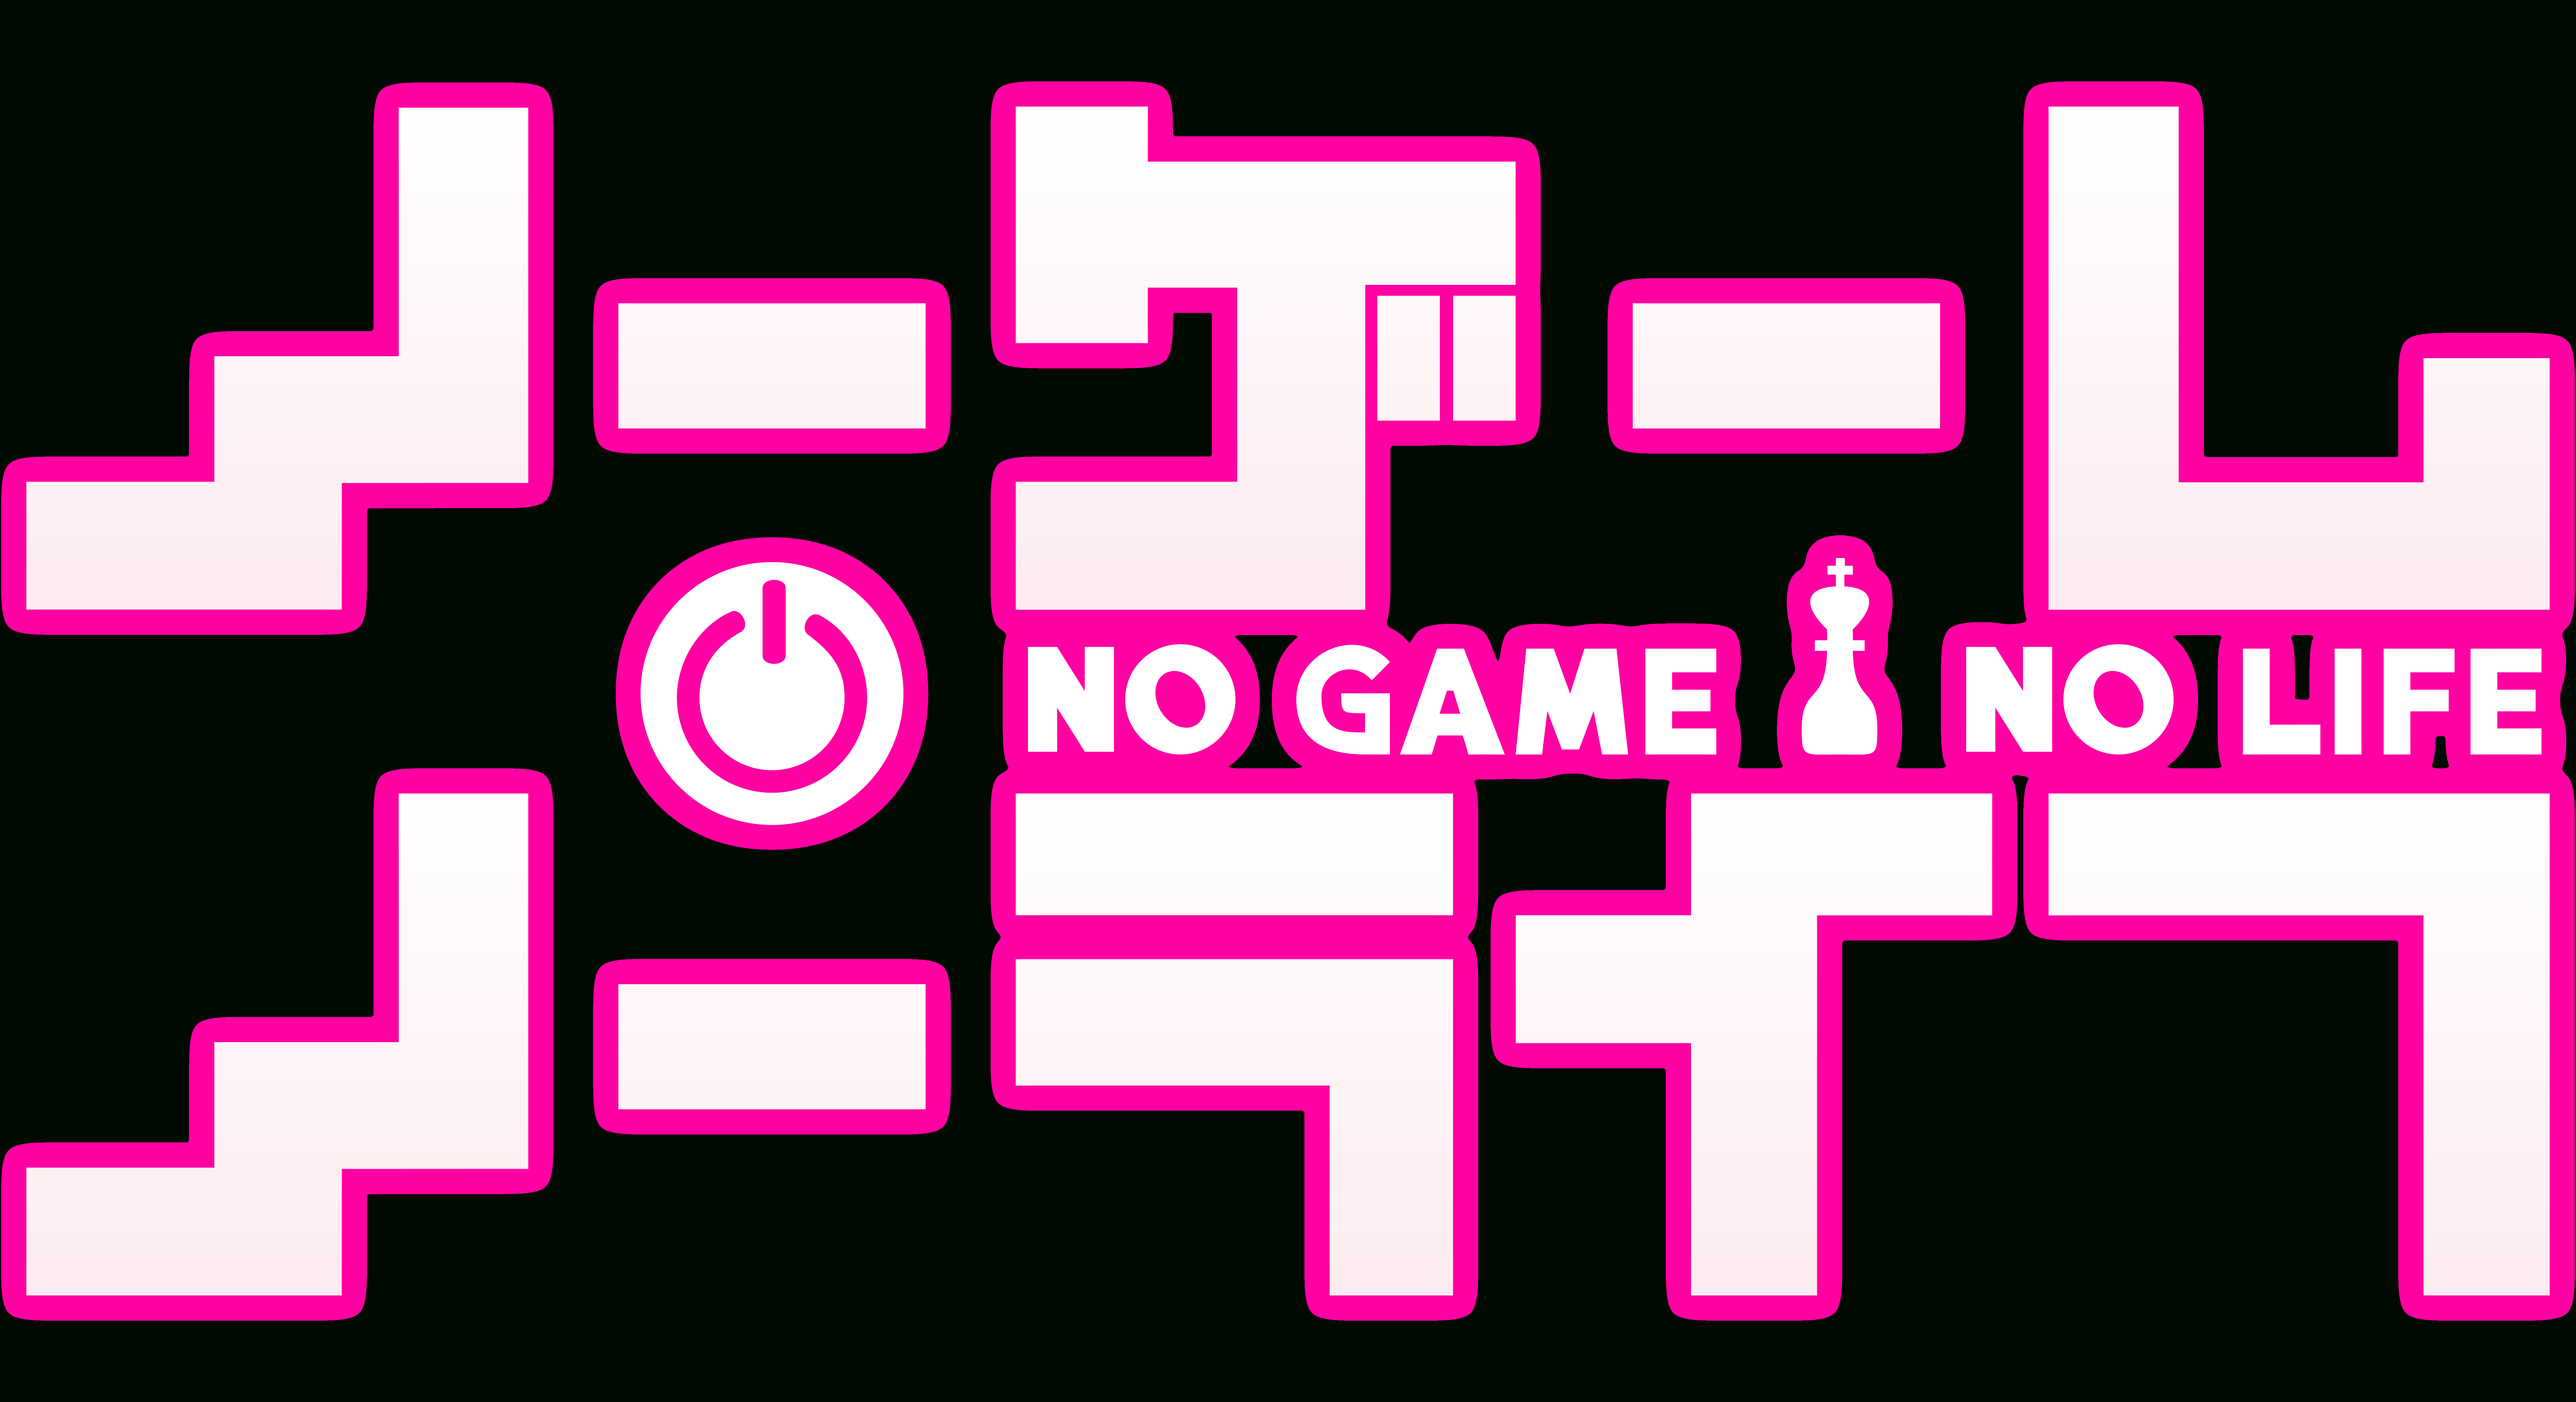 Тут нету игр. There is no Life игра. Нет игры нет жизни лого. There is no game логотип. No game no Life font.